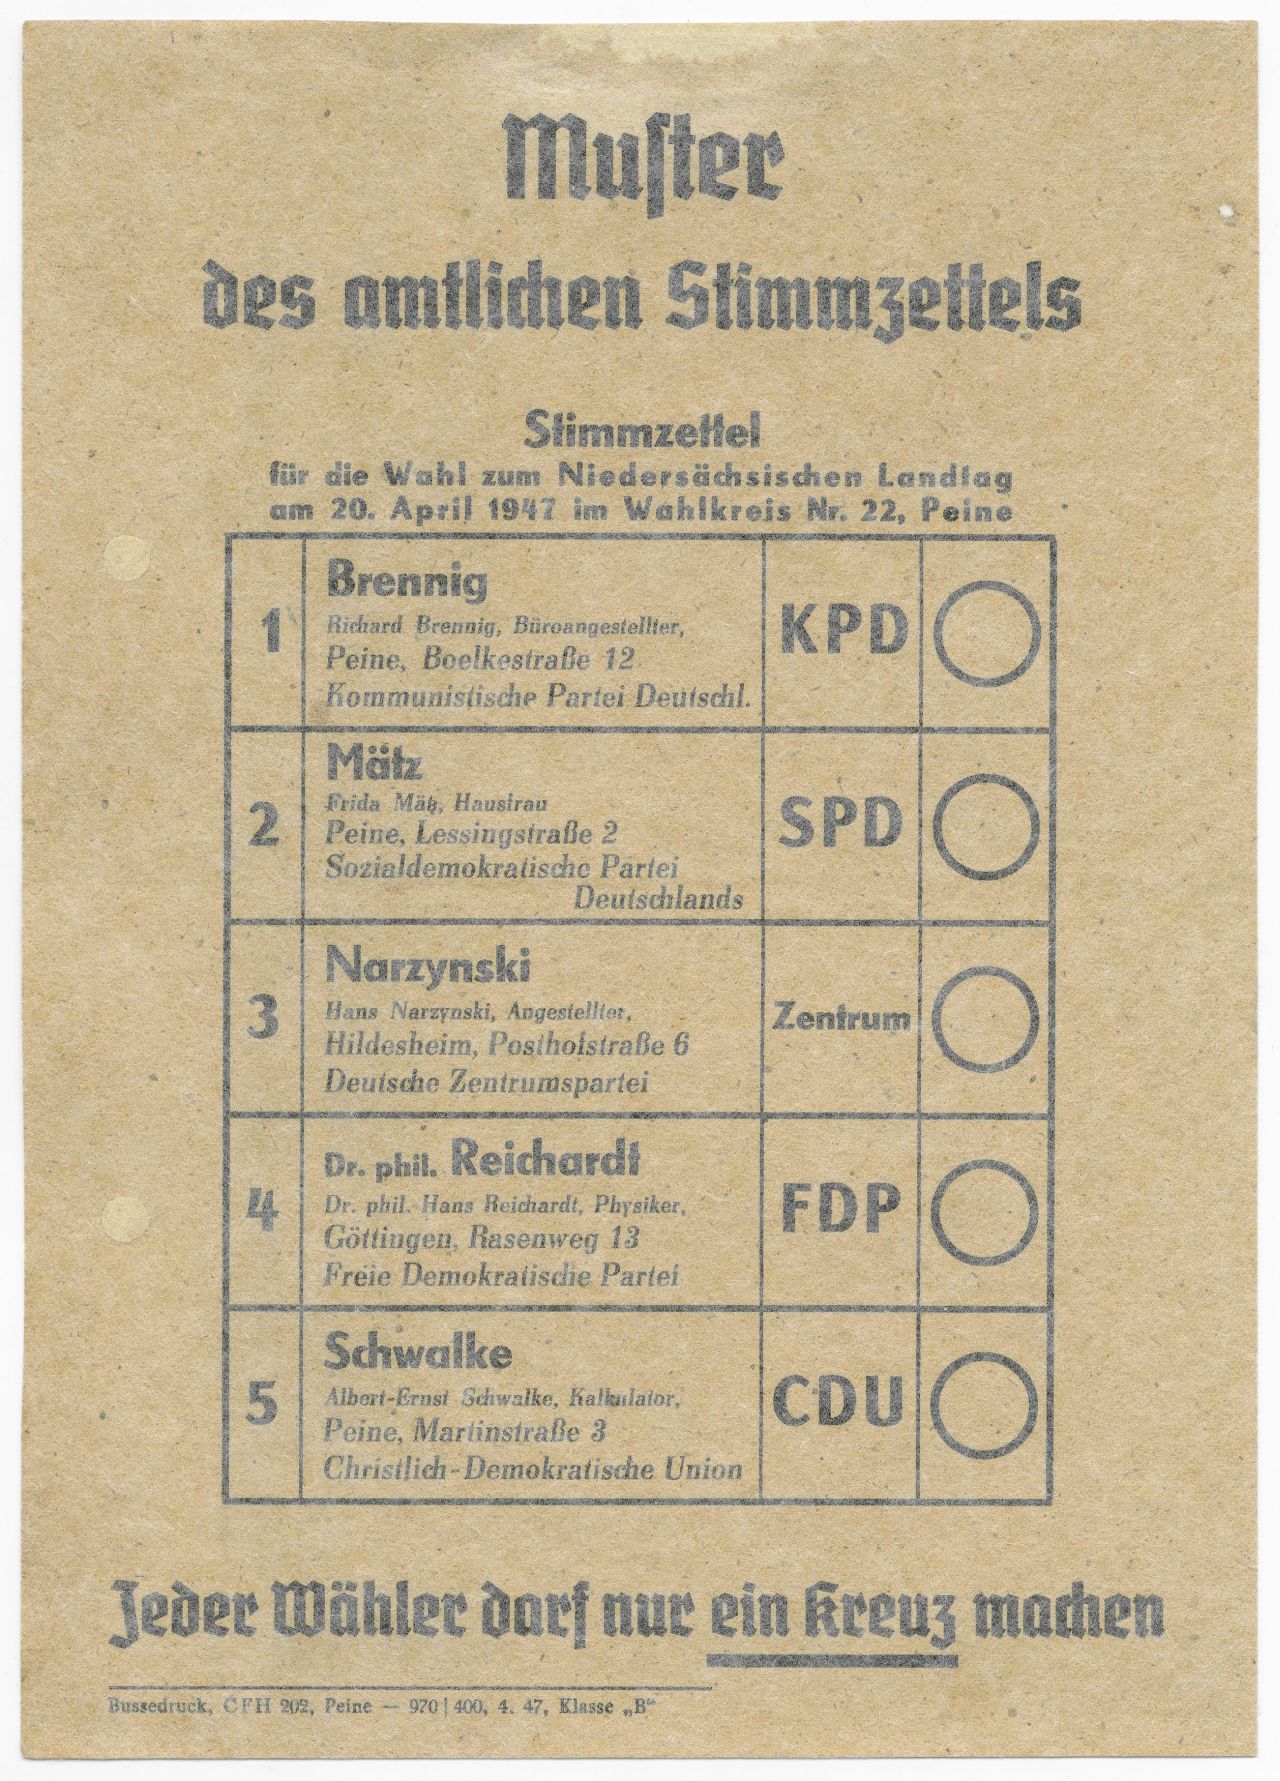 Flugblatt, das ein Muster des amtlichen Stimmzettels für die niedersächsische Landtagswahl am 20.04.1947 zeigt.
Es stehen folgende Parteien zur Wahl:
Kommunistische Partei Deutschlands (KPD)
Sozialdemokratische Partei Deutschlands (SPD)
Deutsche Zentrumspartei
Freie Demokratische Partei (FDP)
Christlich-Demokratische Union (CDU)